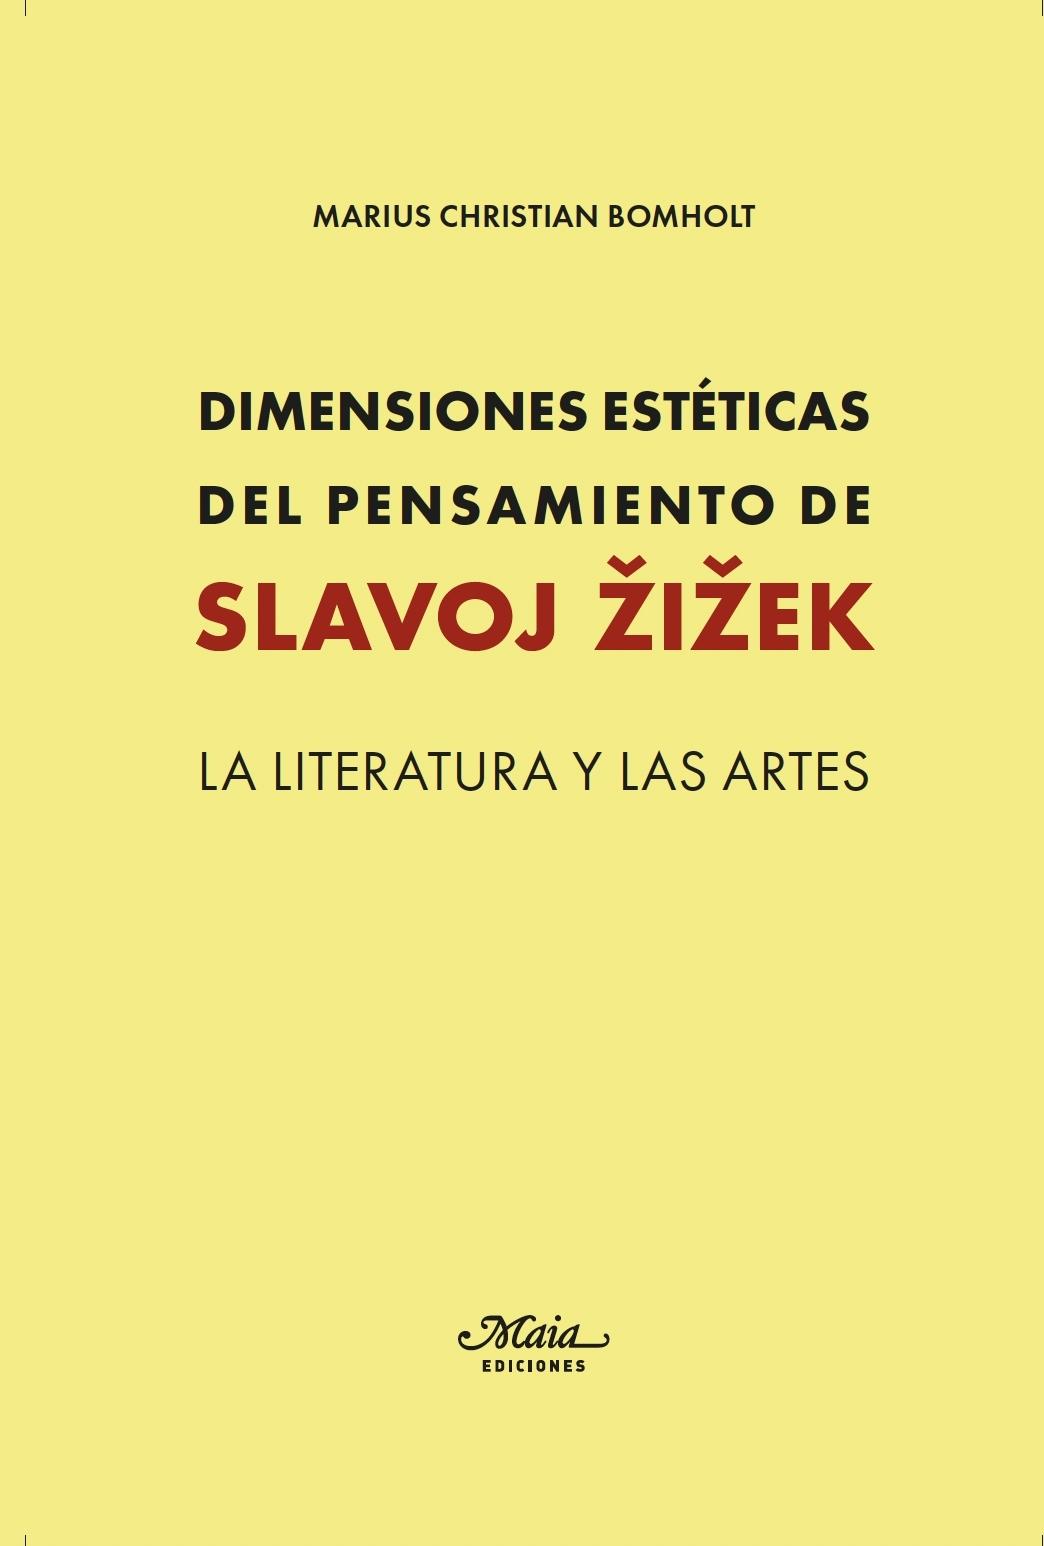 Dimensiones Estéticas del Pensamiento de Slavoj Zizek "La Literatura y las Artes"